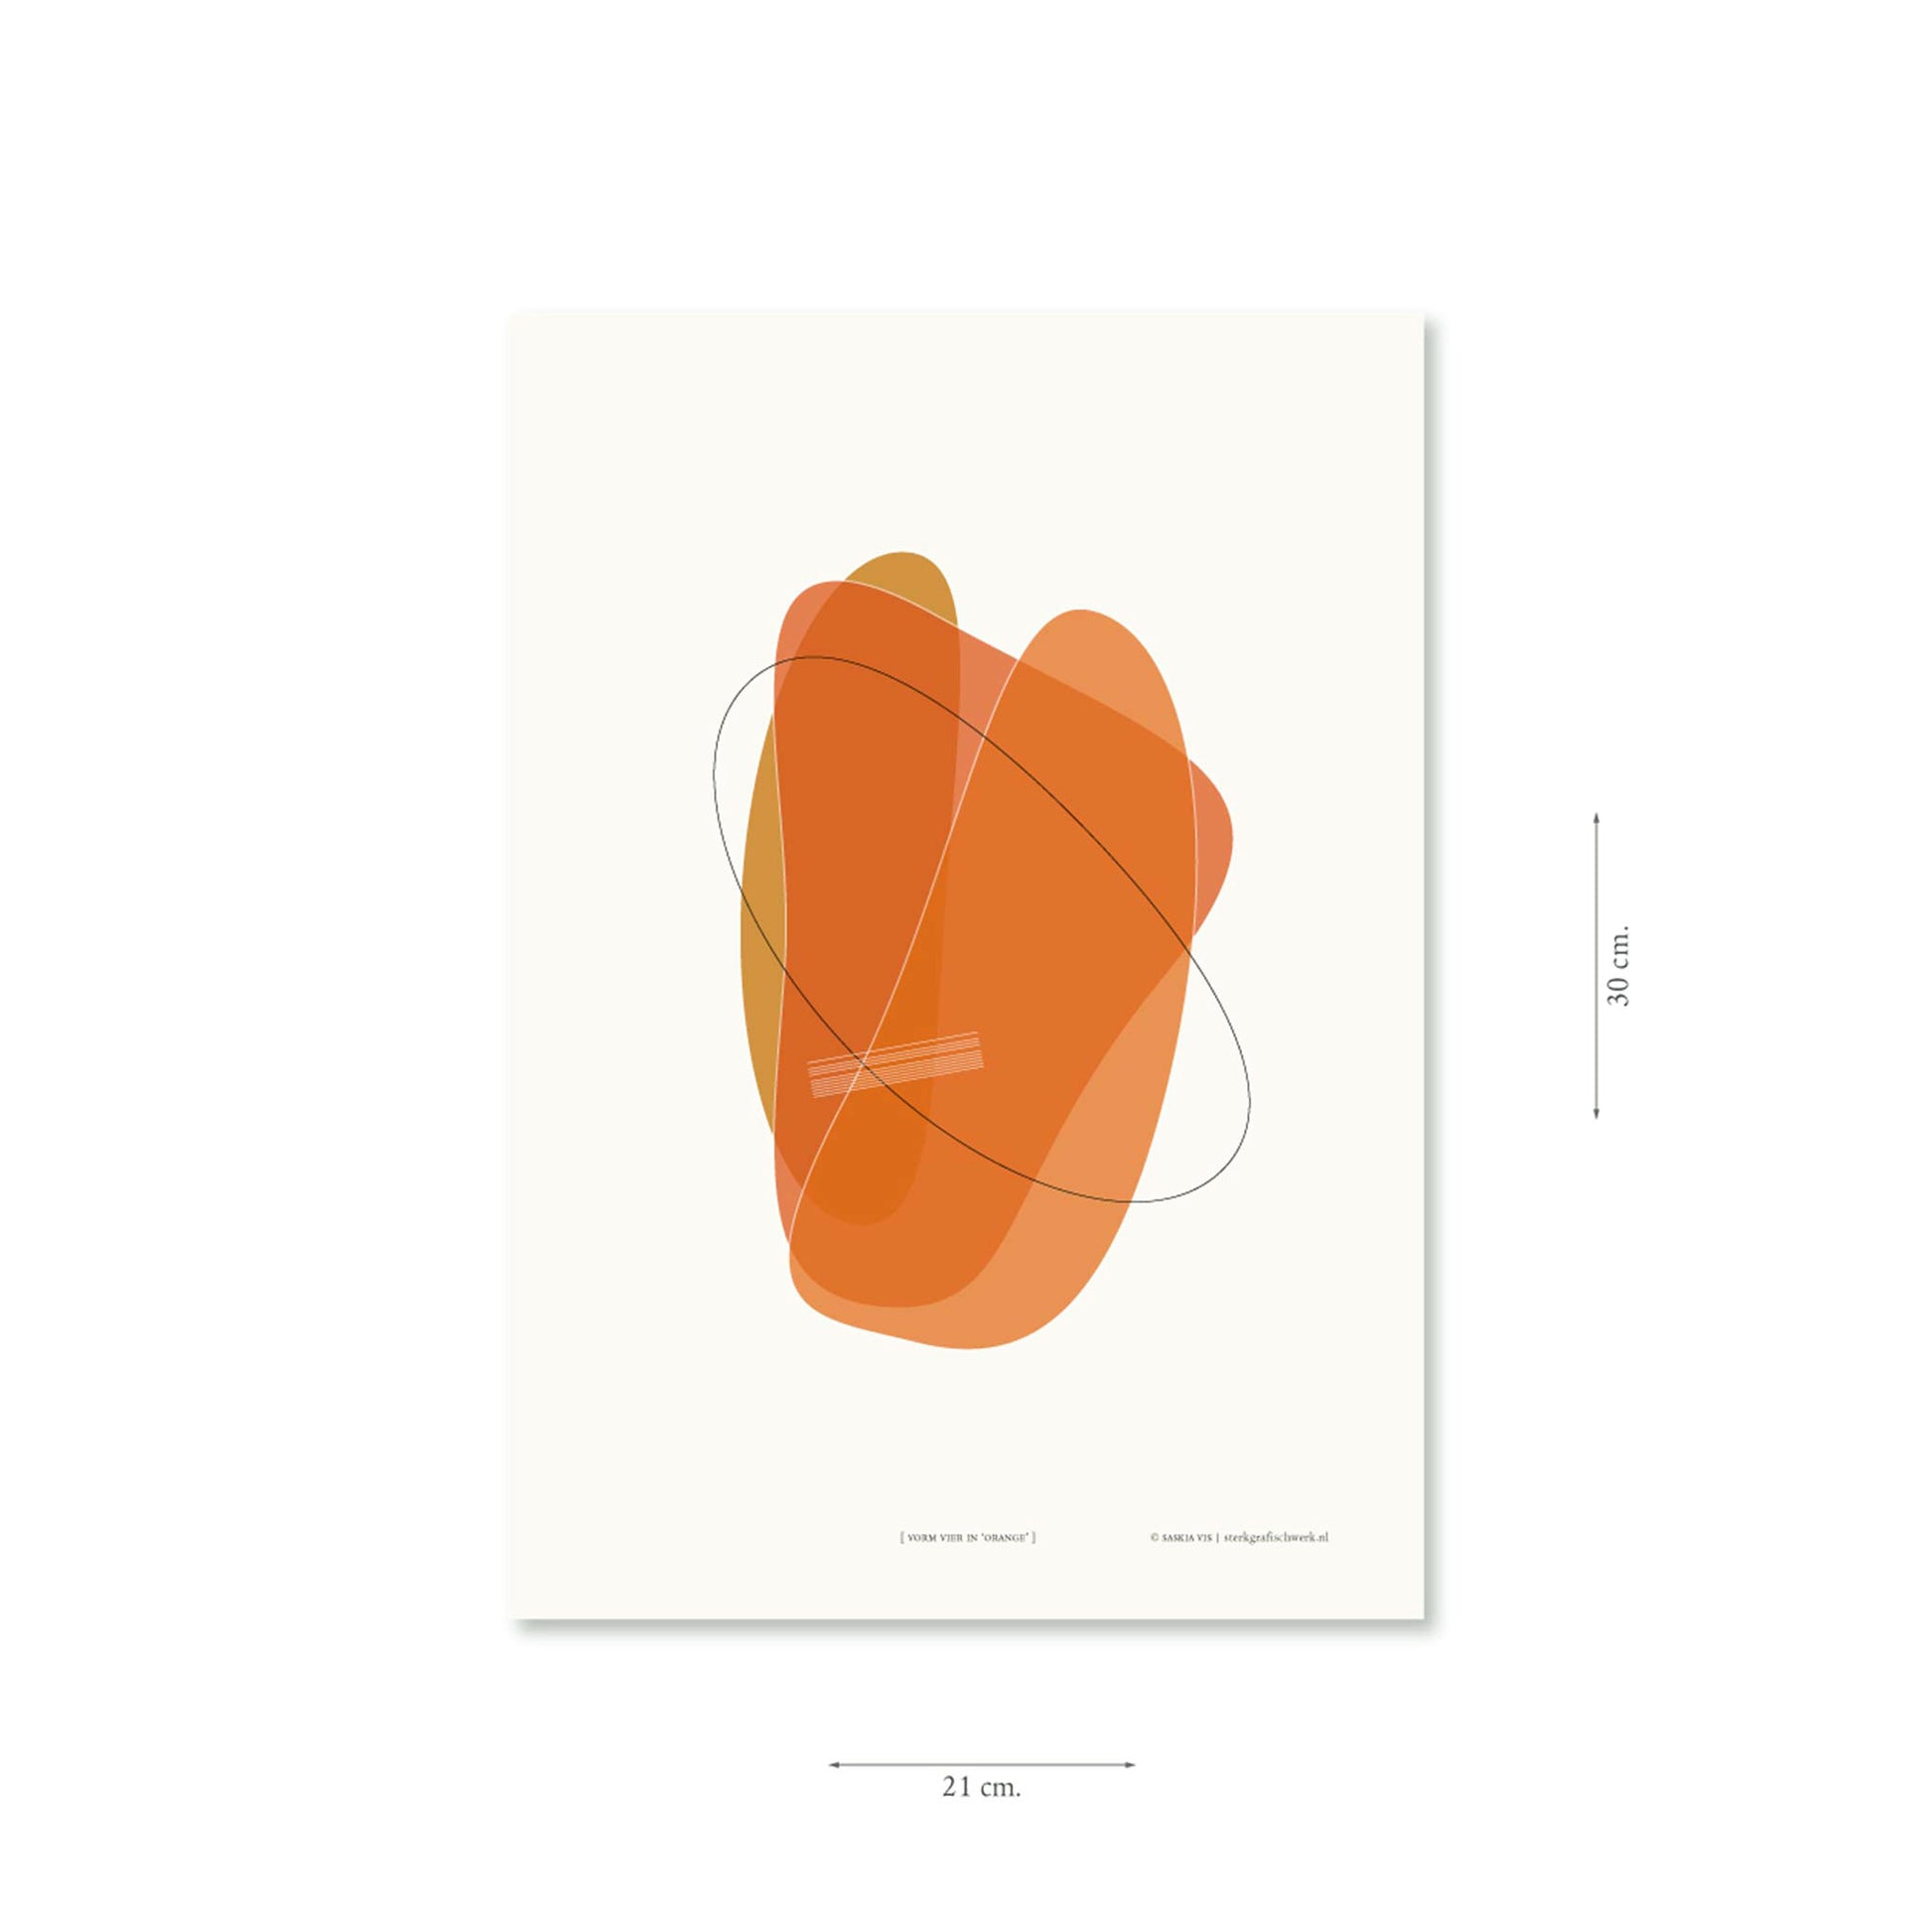 Productafbeelding, poster "vorm vier in orange", met aanduiding van het formaat erop weergegeven 21 x 30 cm